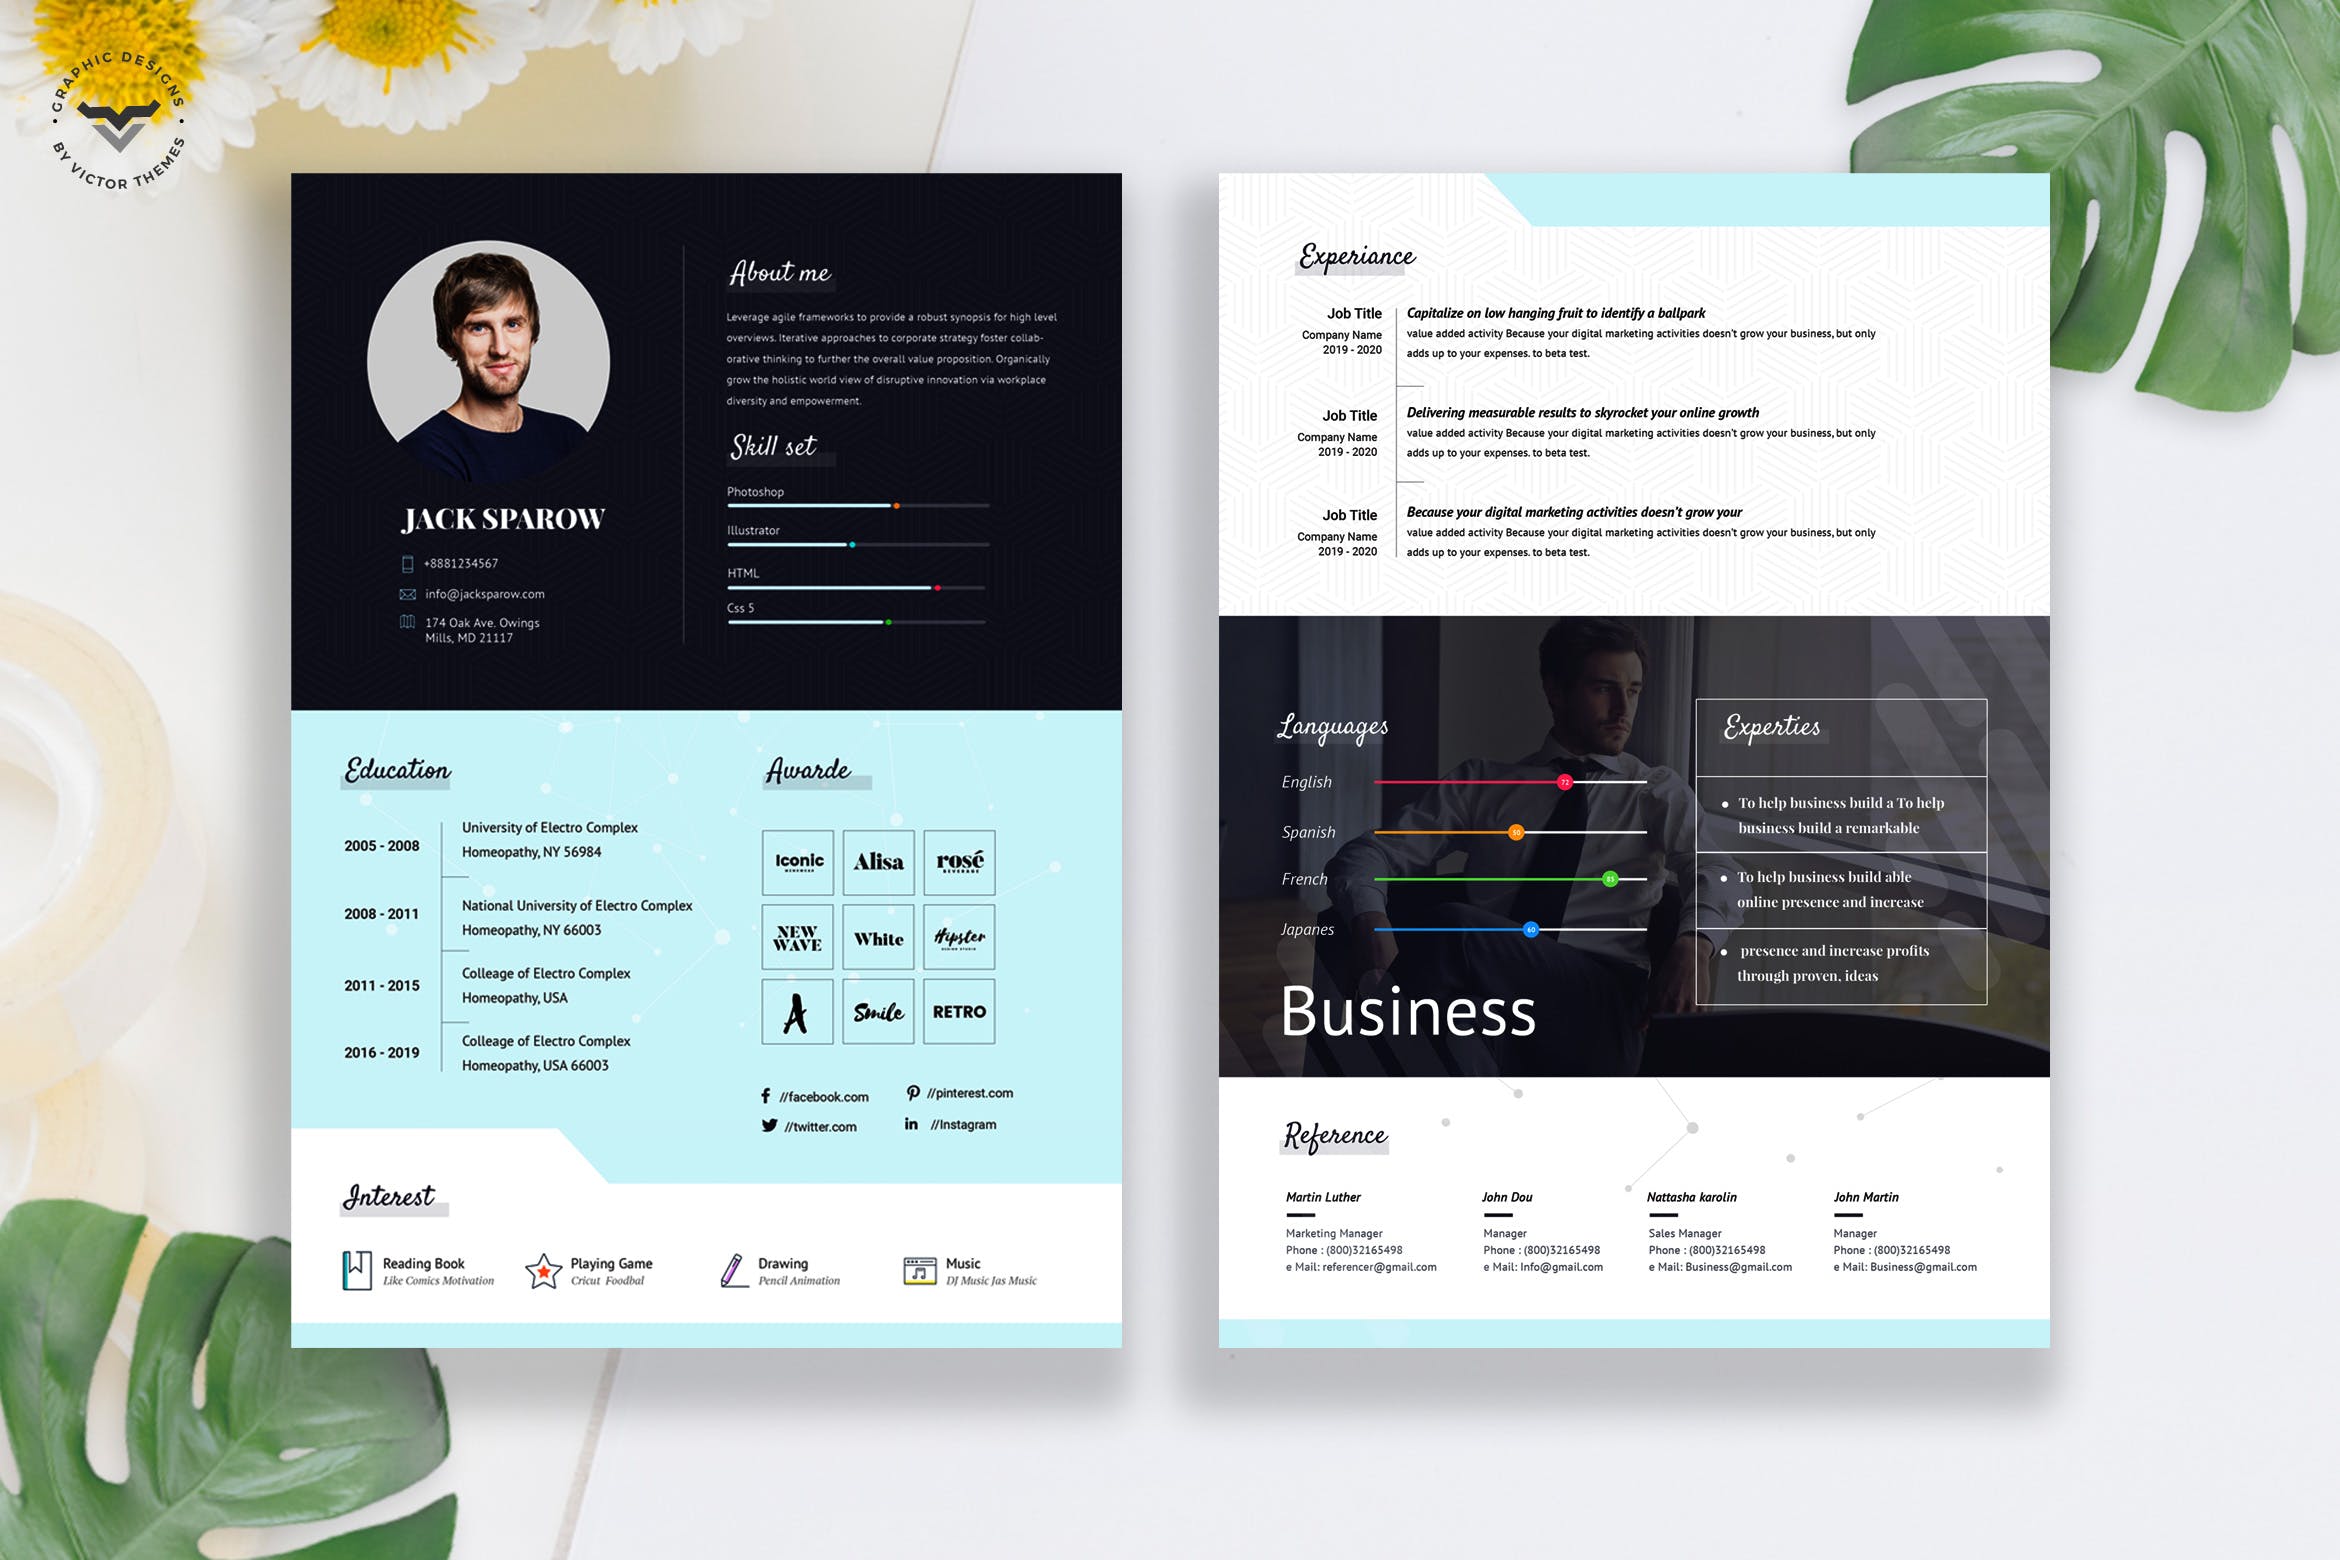 两页式创意设计师CV大洋岛精选简历模板 Creative Business CV Template插图